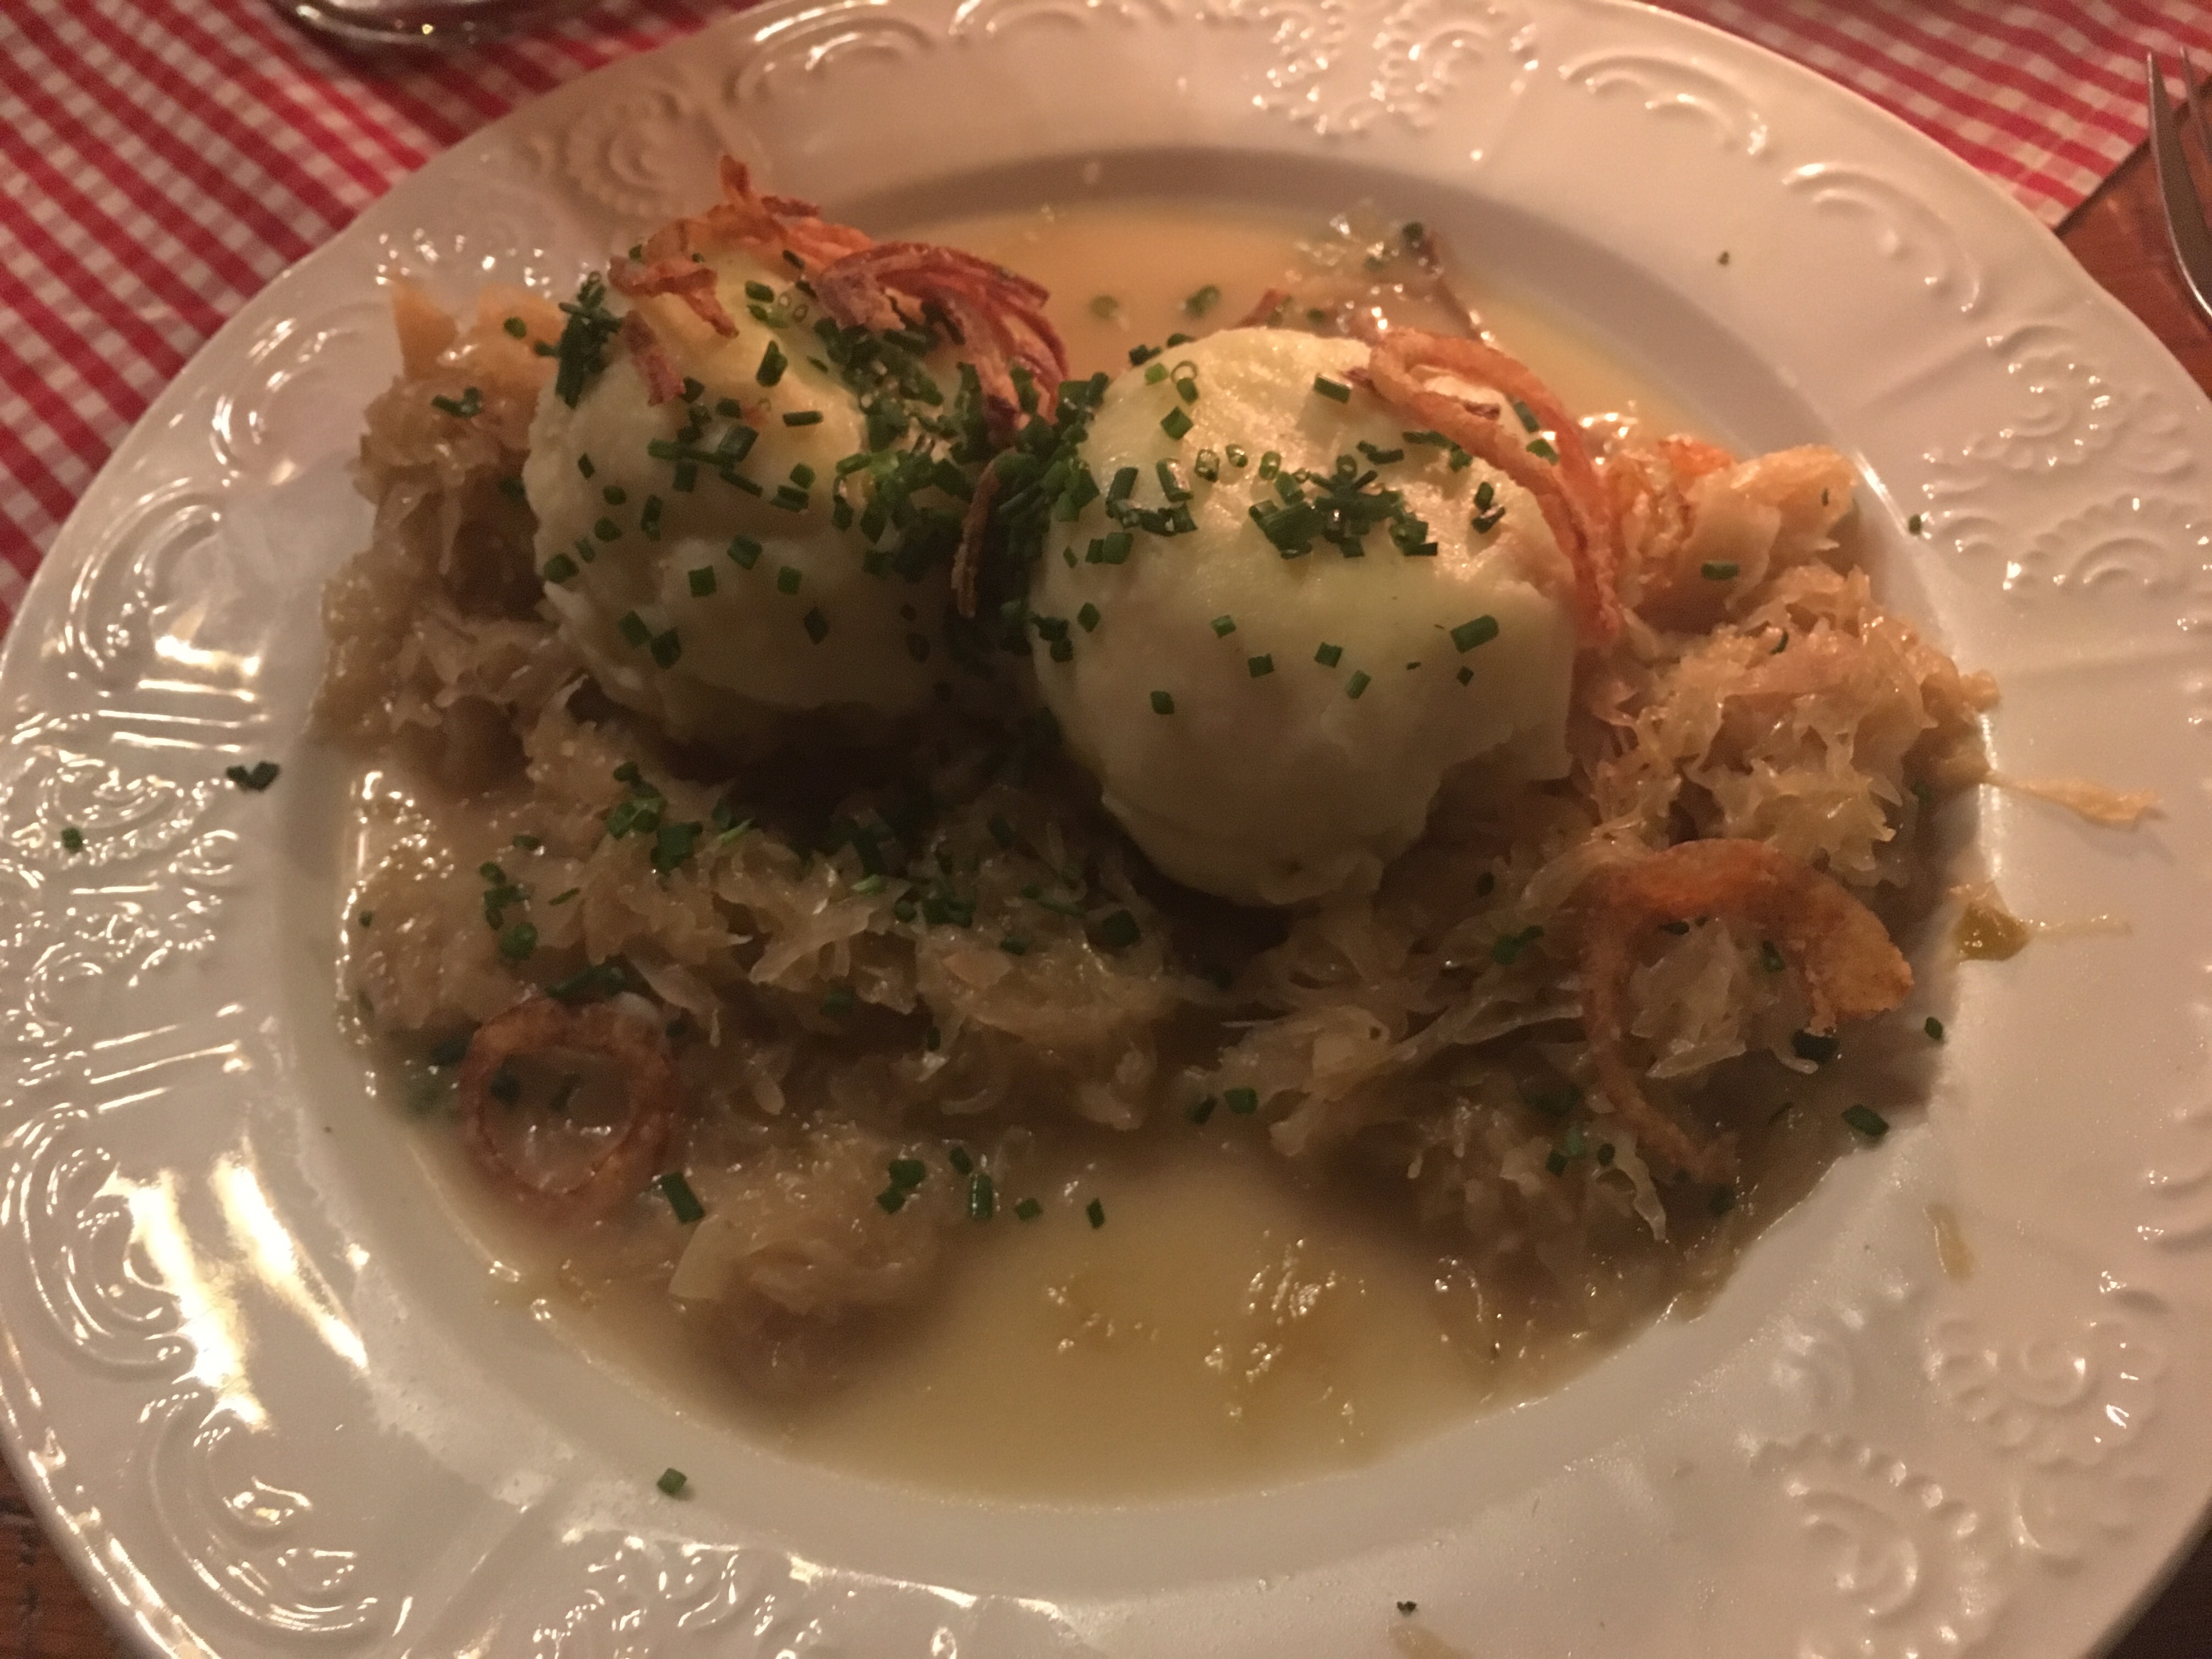 Dumplings and sauerkraut